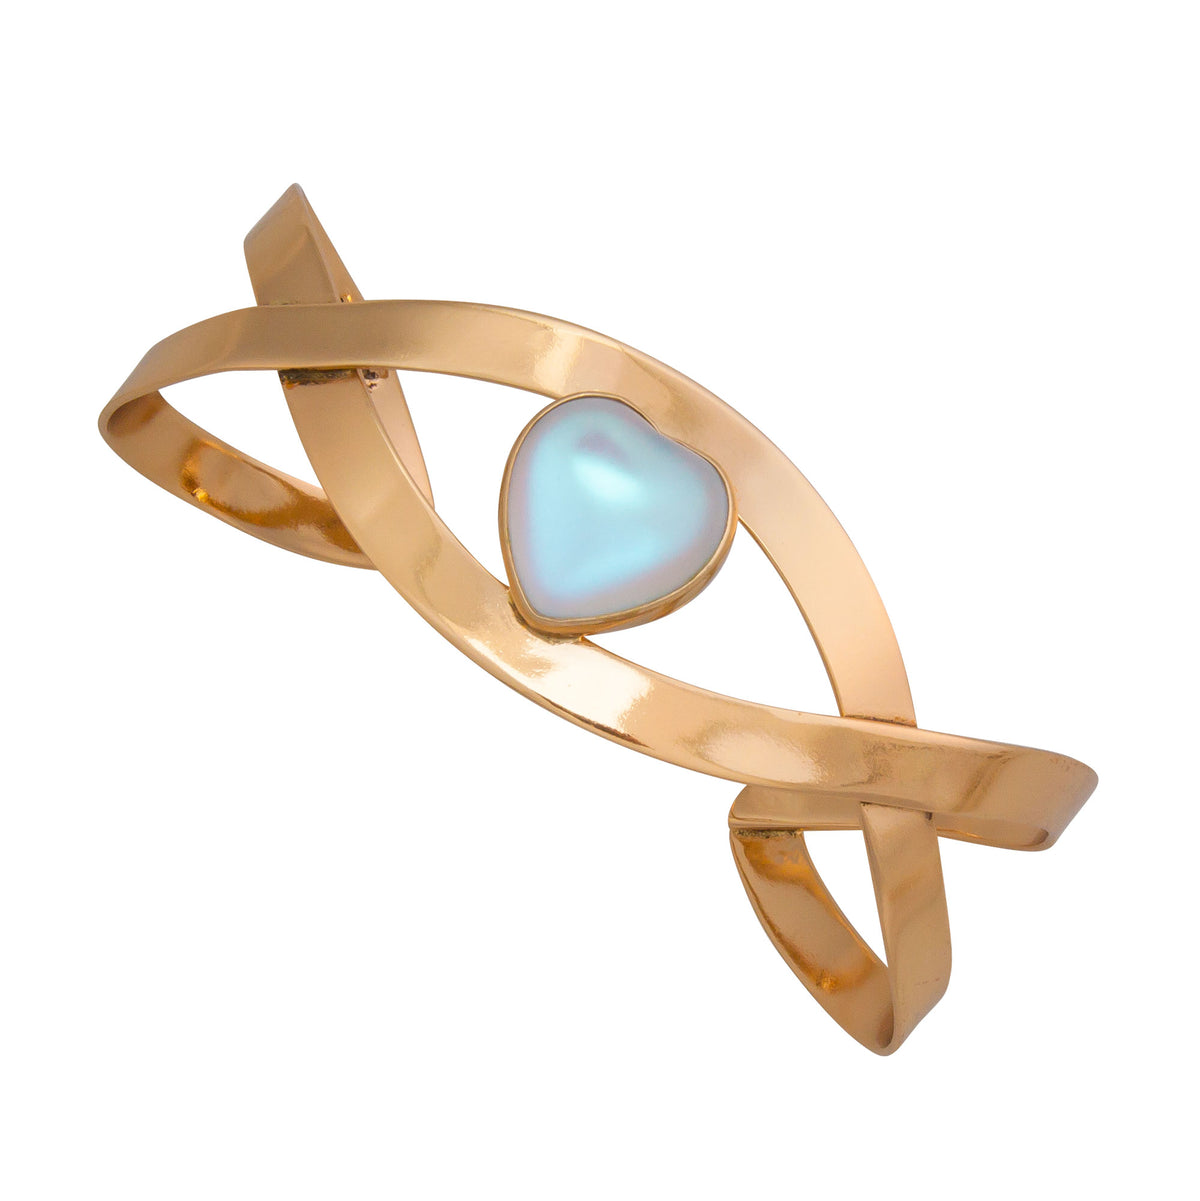 Alchemia Luminite Heart Infinity Cuff | Charles Albert Jewelry